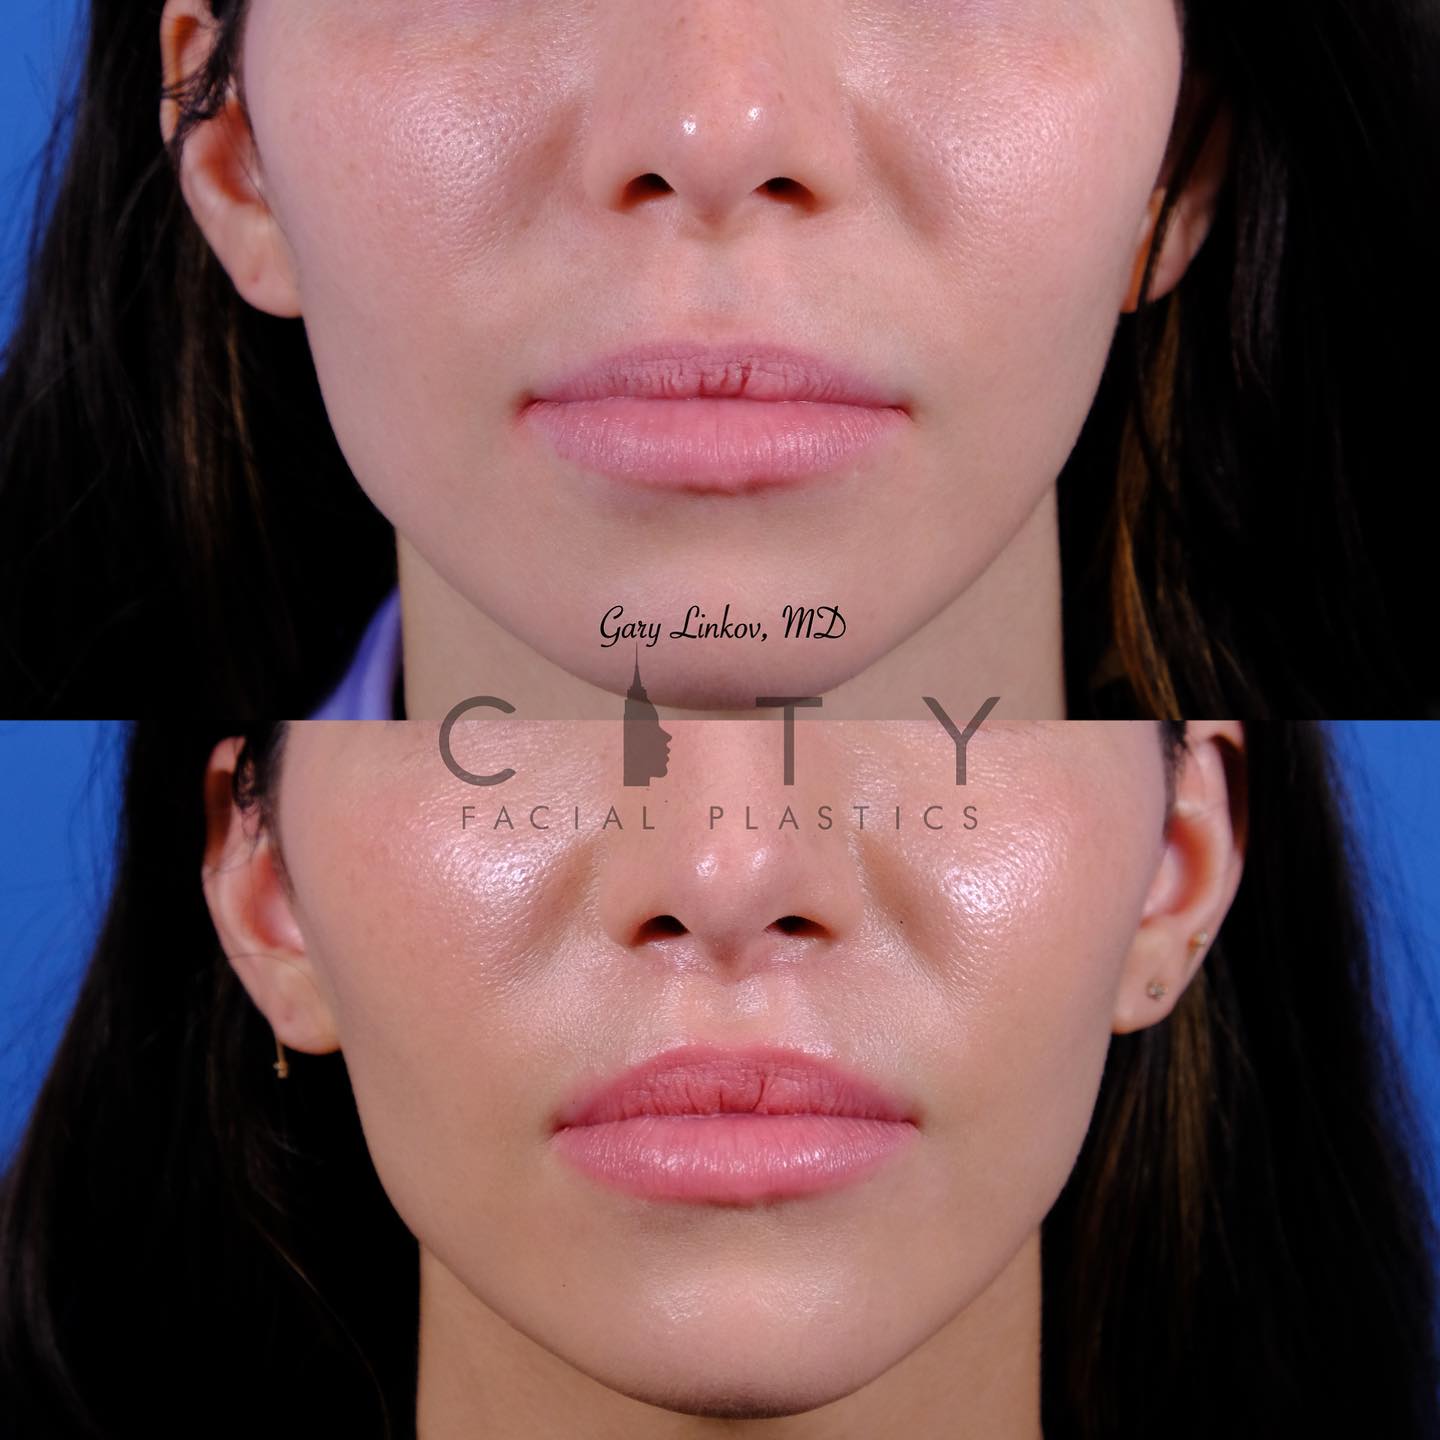 City Facial Plastics: Dr. Gary Linkov 150 East 56th StSuite 1AB, New York